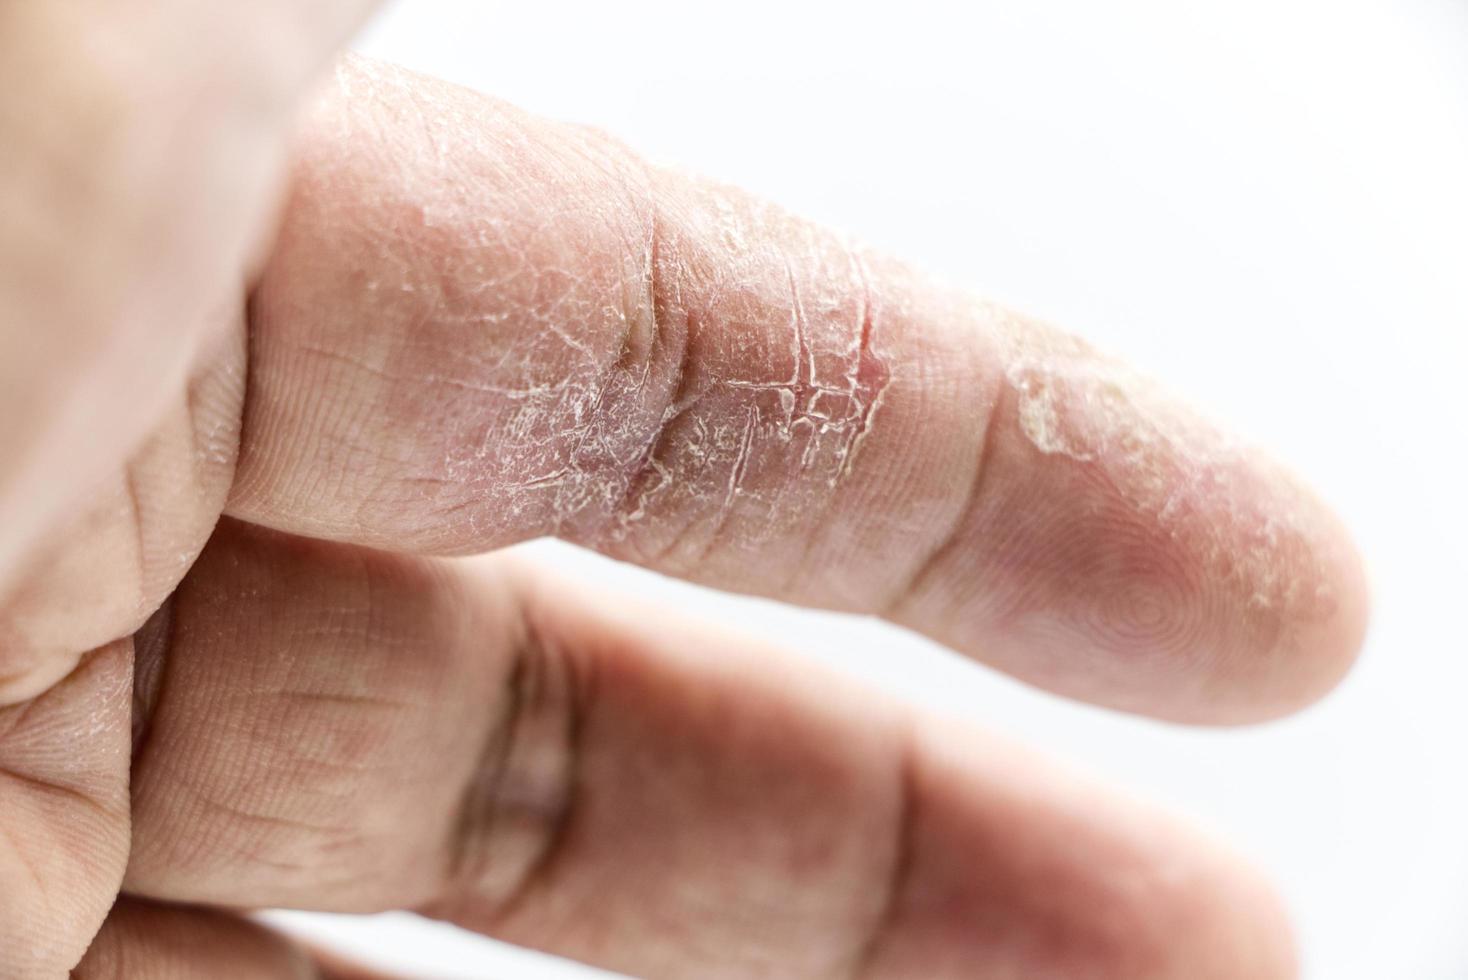 doença de pele do dedo indicador em fundo branco foto